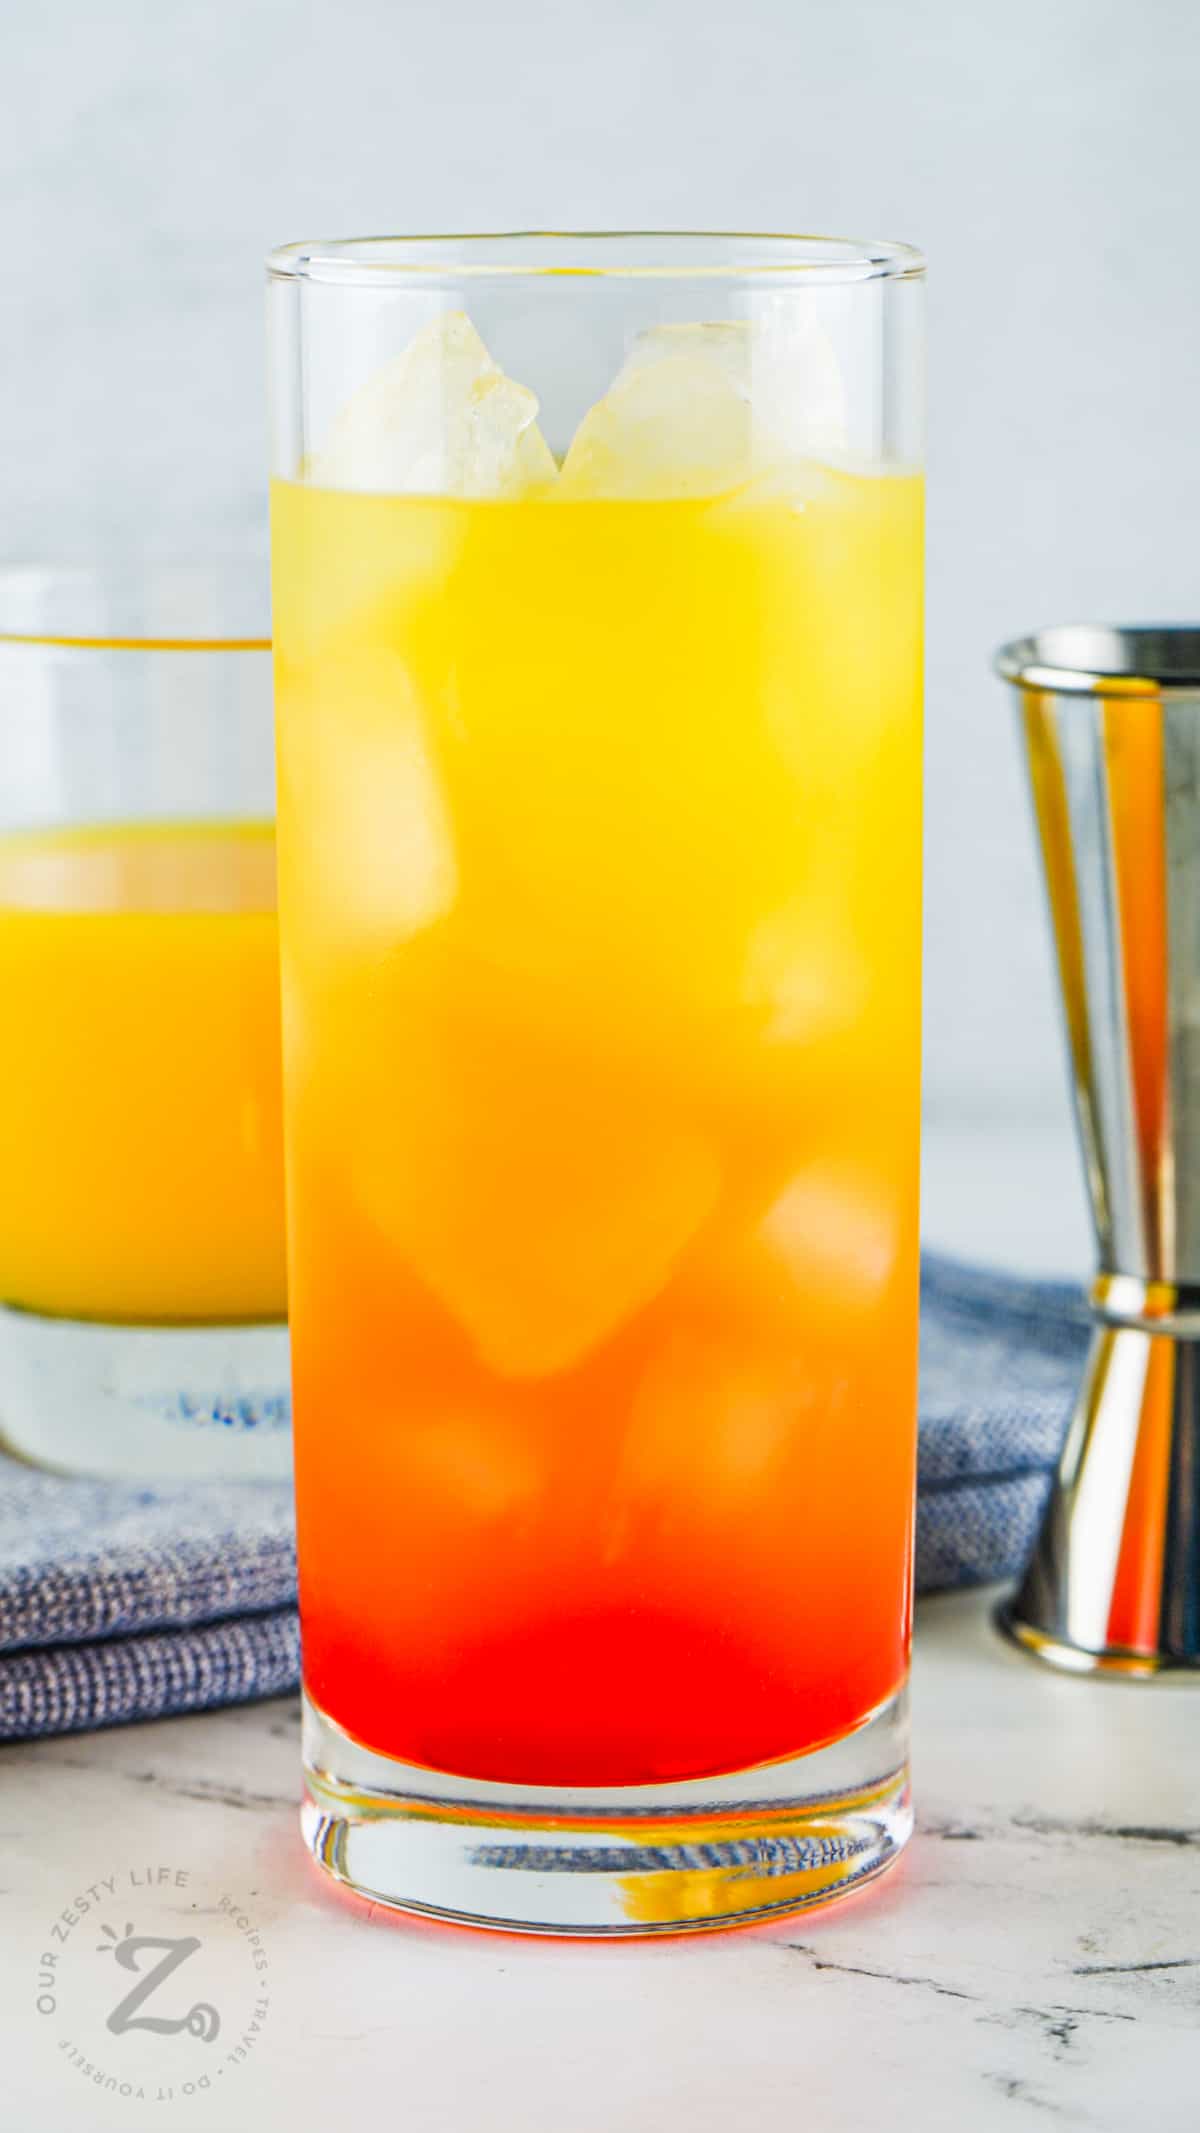 Tequila Sunrise in a glass